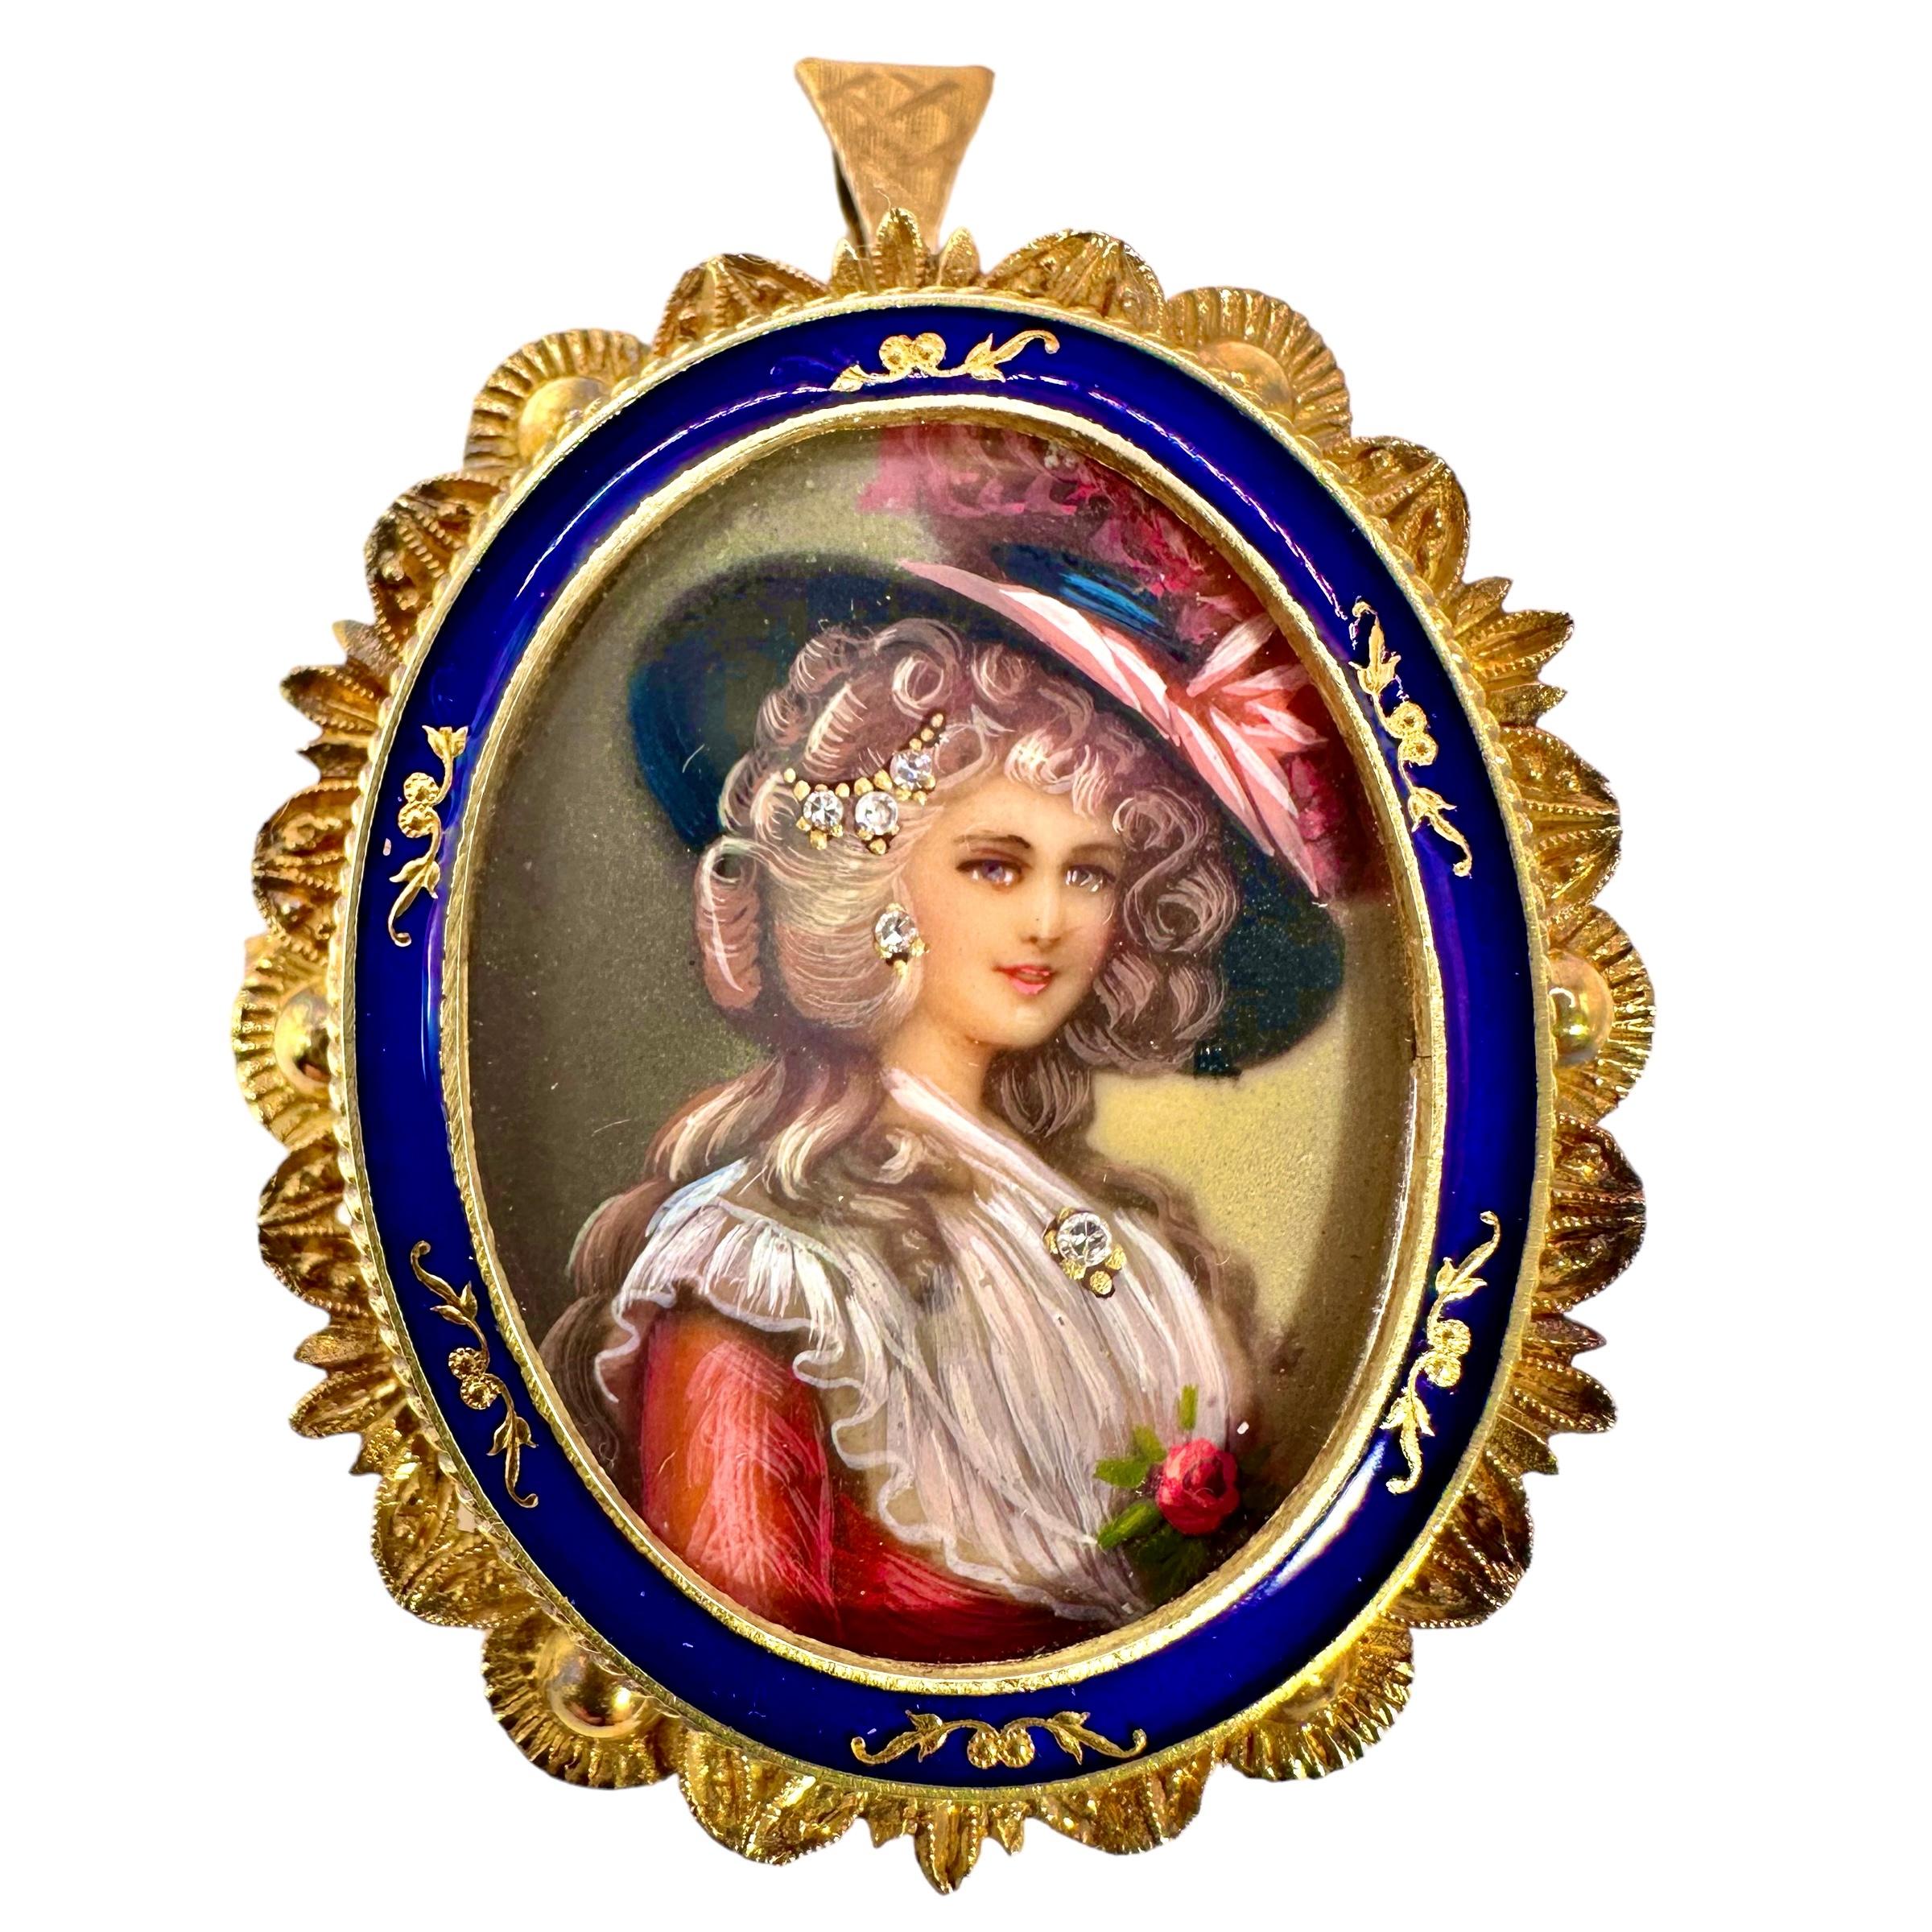 Portrait peint à la main d'une dame du XIXe siècle ornée d'un pendentif en diamant, de boucles d'oreilles en diamant et d'une épingle à cheveux en diamant,
portant un grand chapeau. Ce charmant portrait est encadré par un cadre en or jaune 18 carats